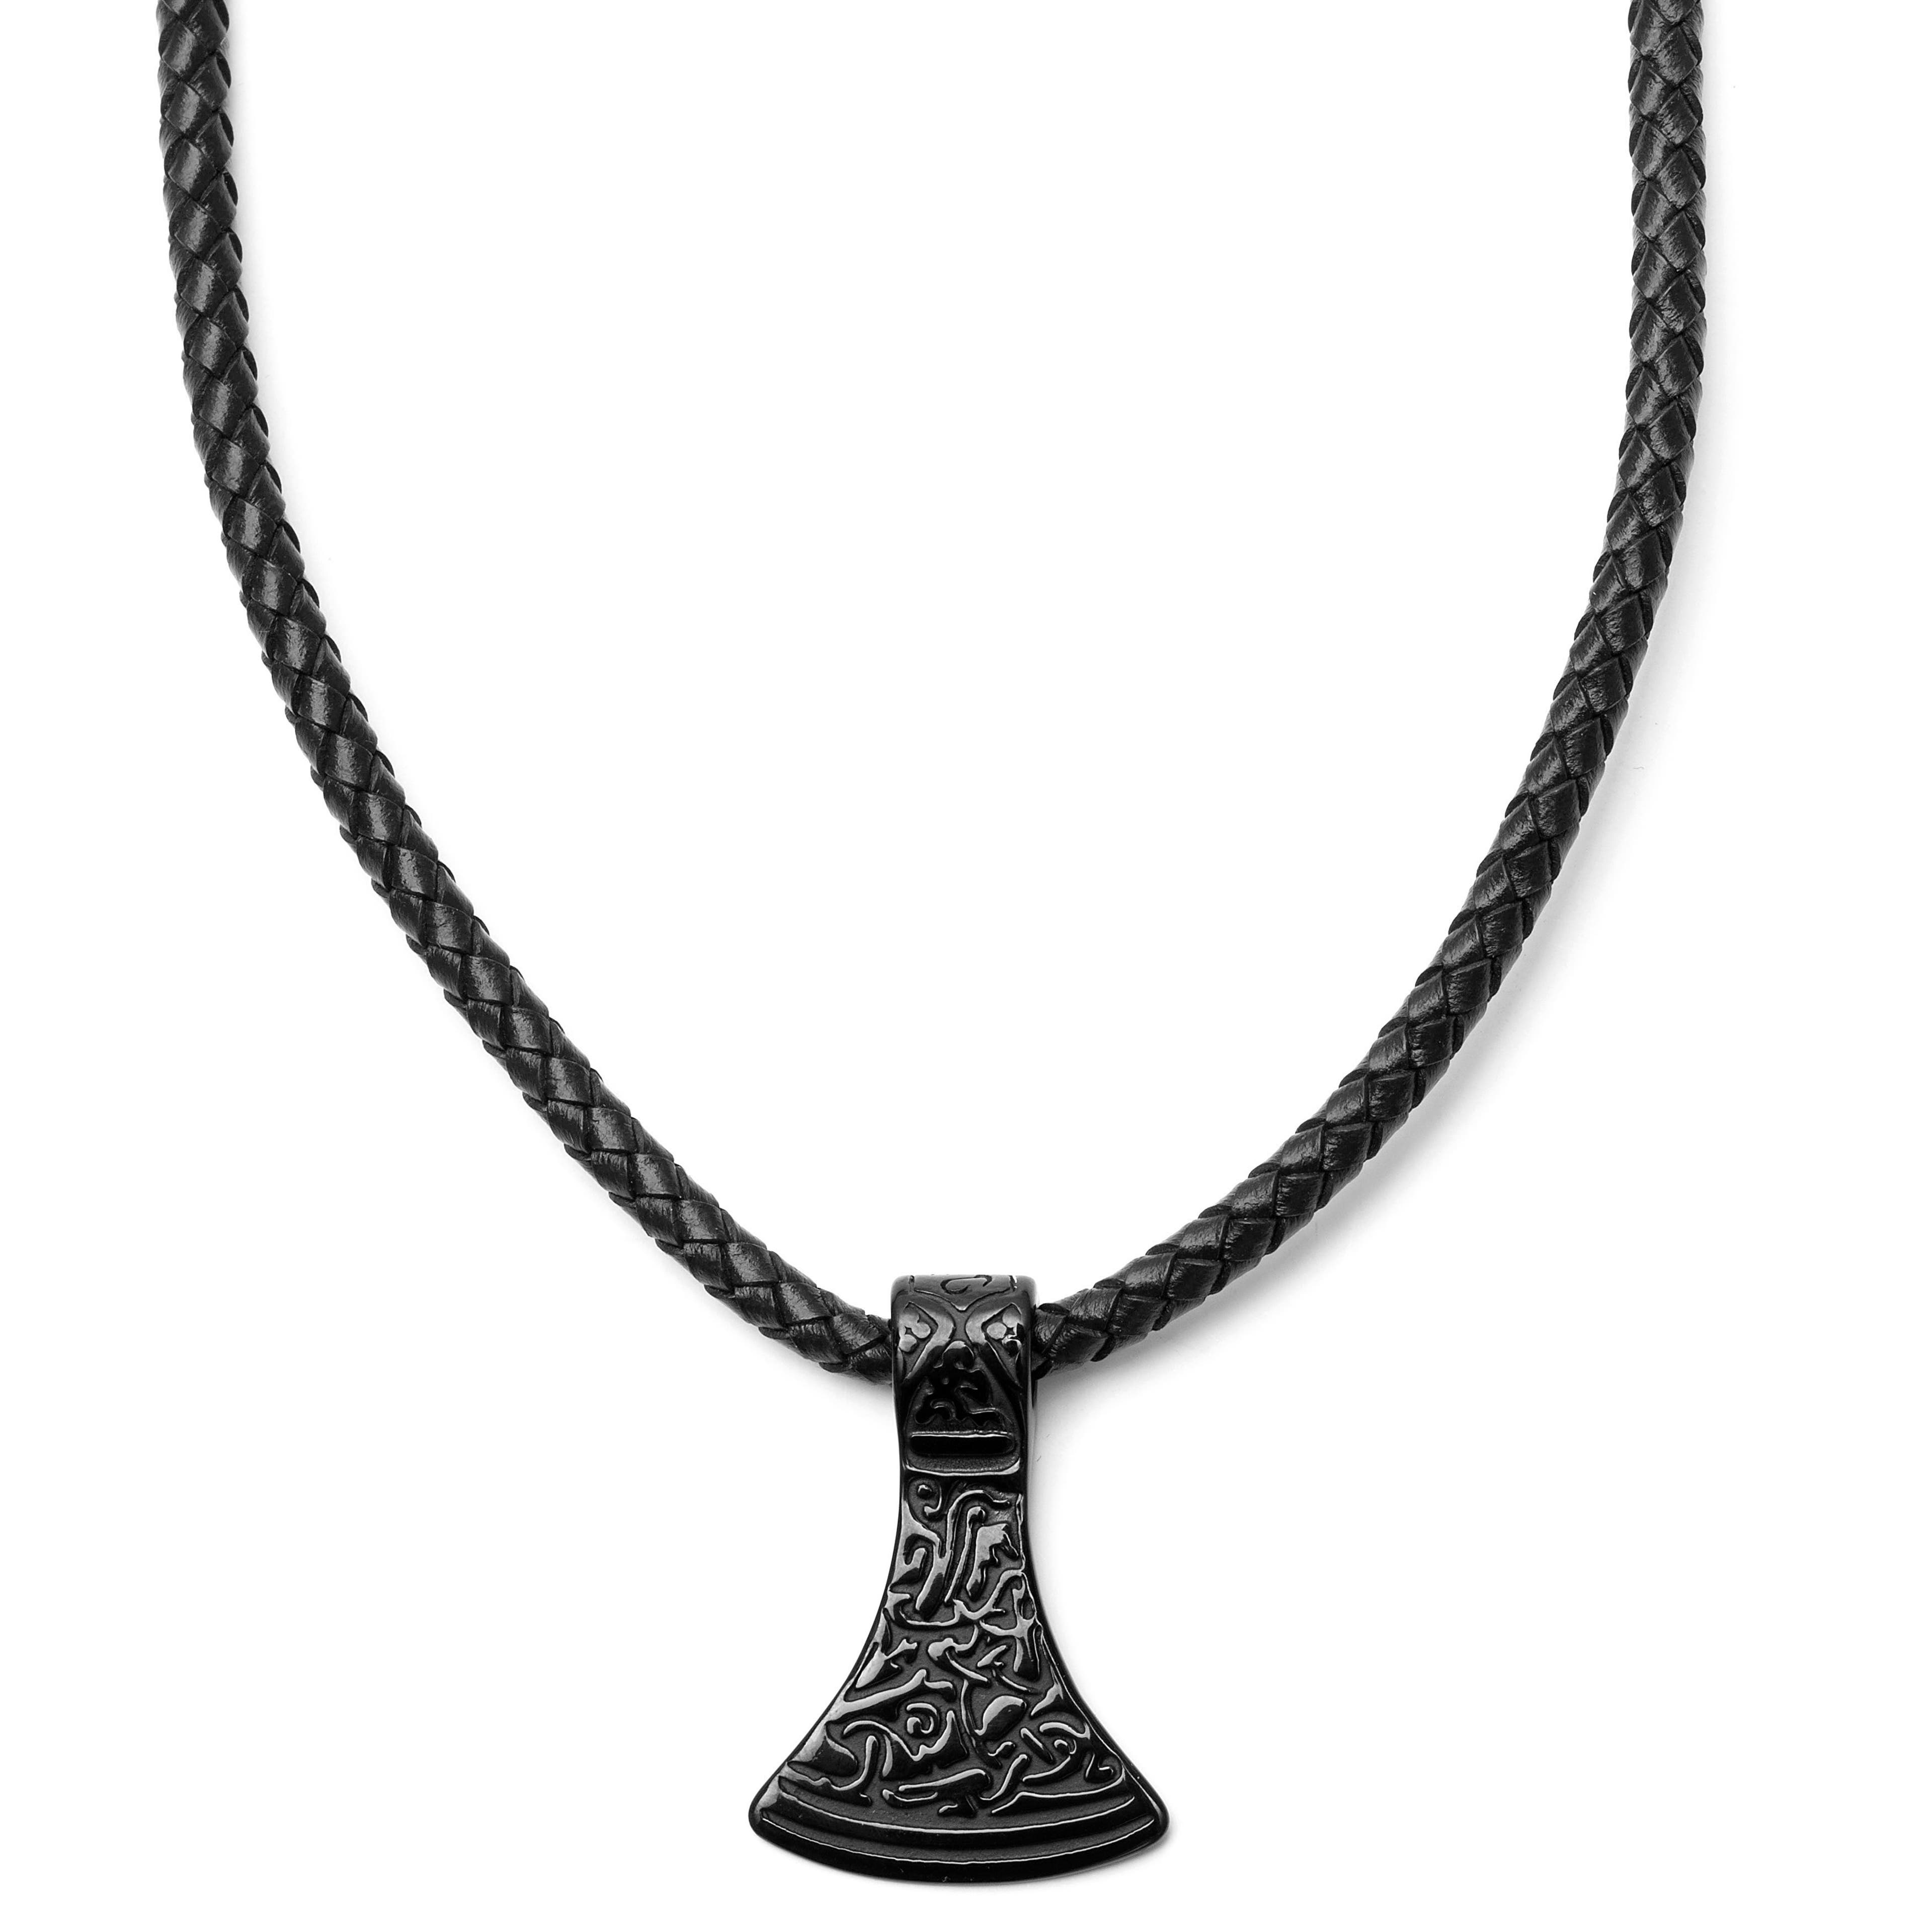 Collana a forma di testa d'ascia con rune incise e cordino in pelle nera